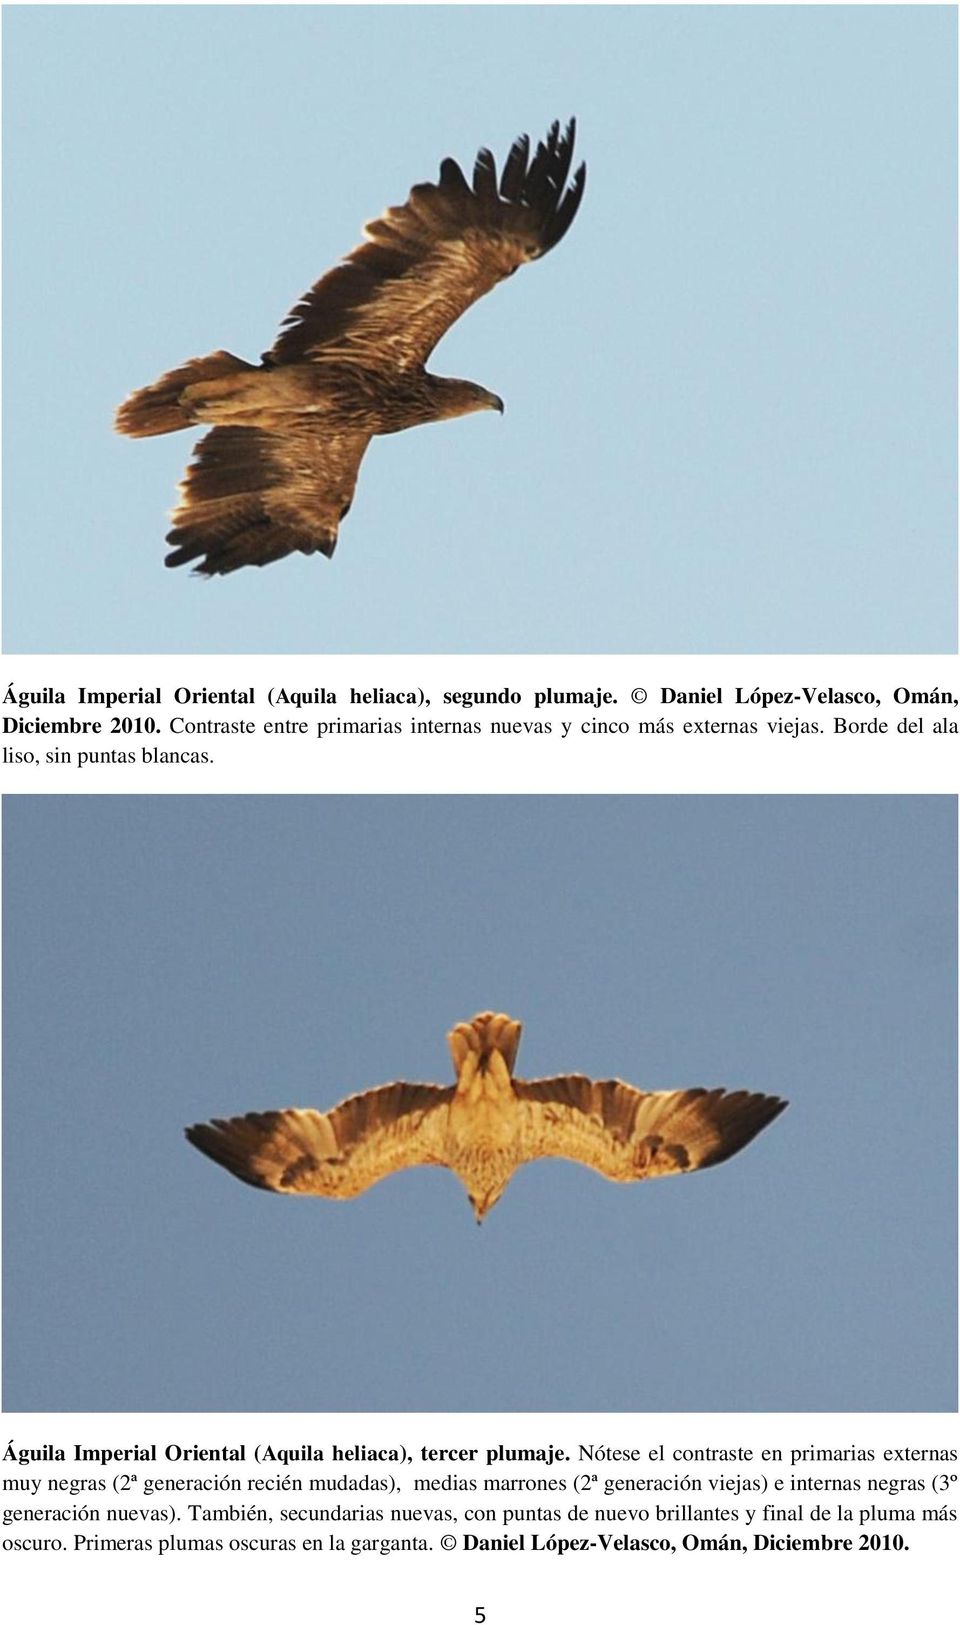 Águila Imperial Oriental (Aquila heliaca), tercer plumaje.